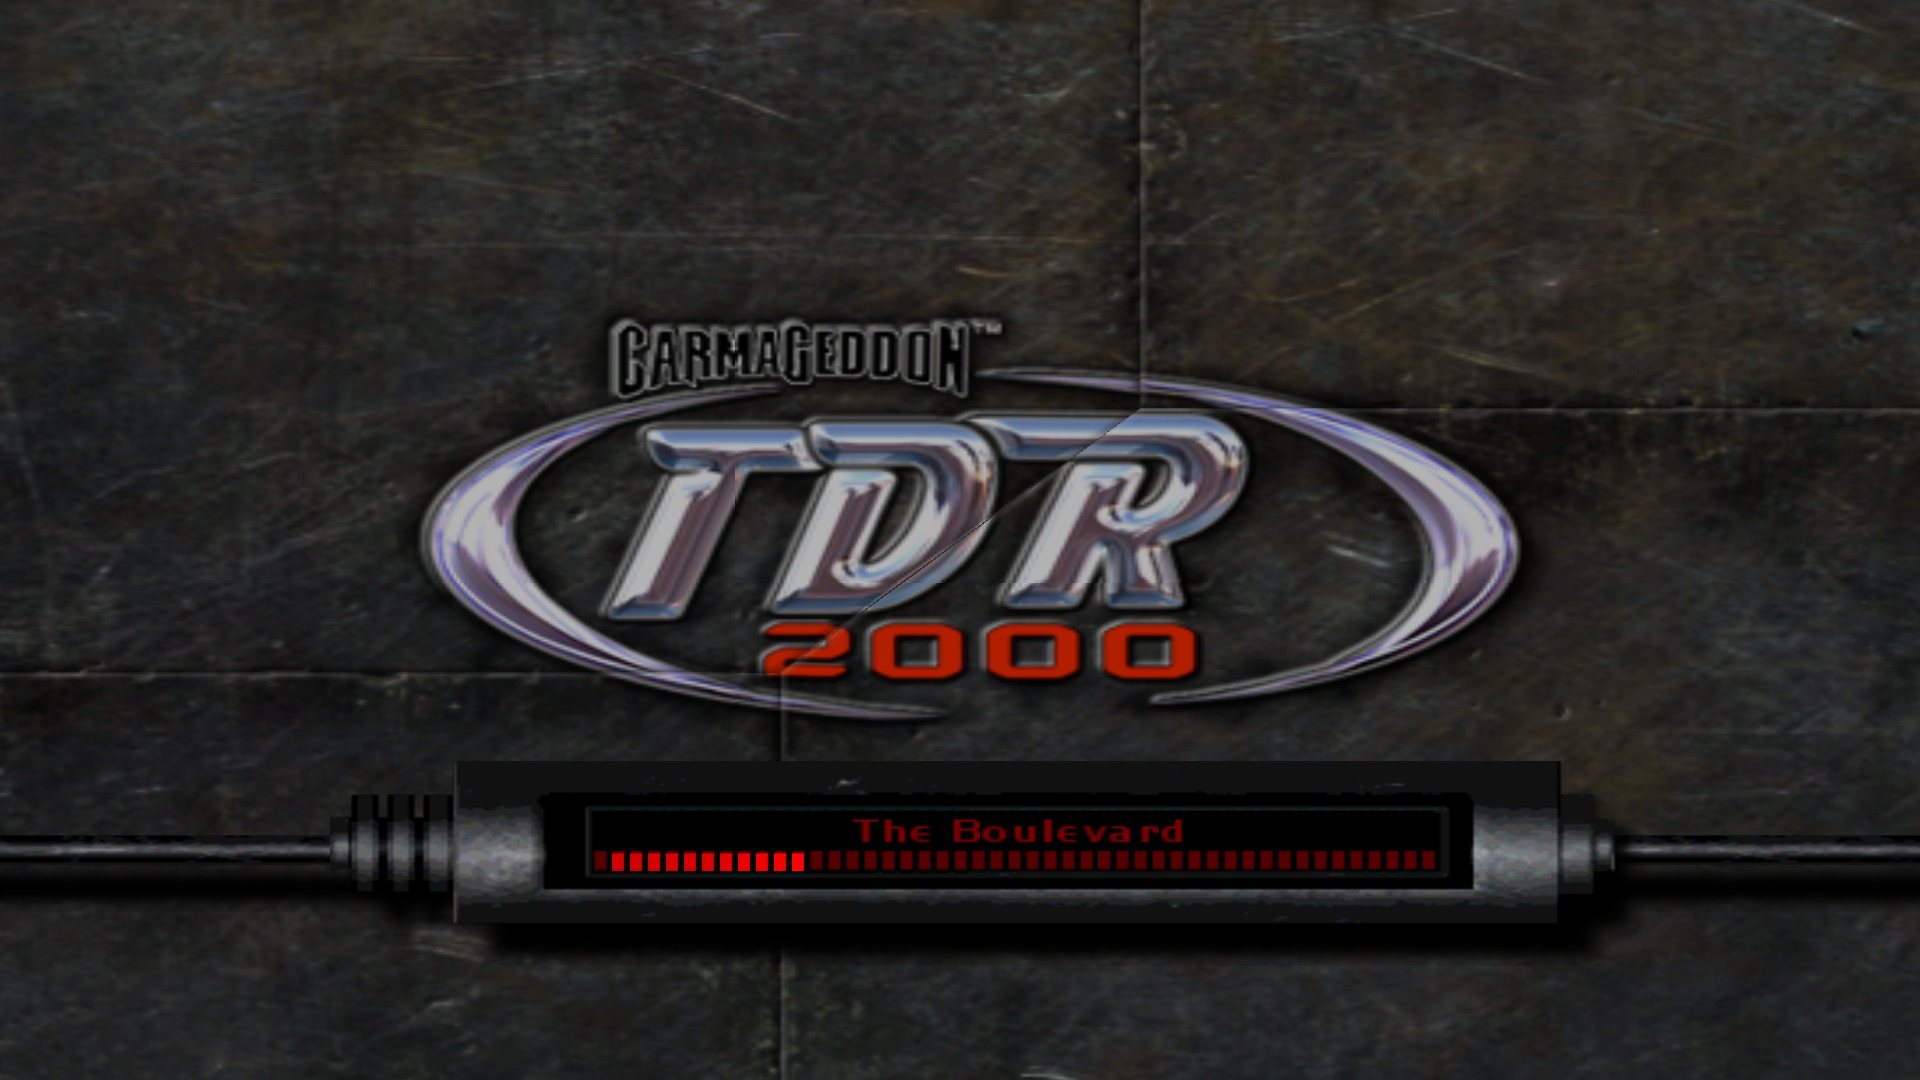 Carmageddon TDR 2000 Steam Gift